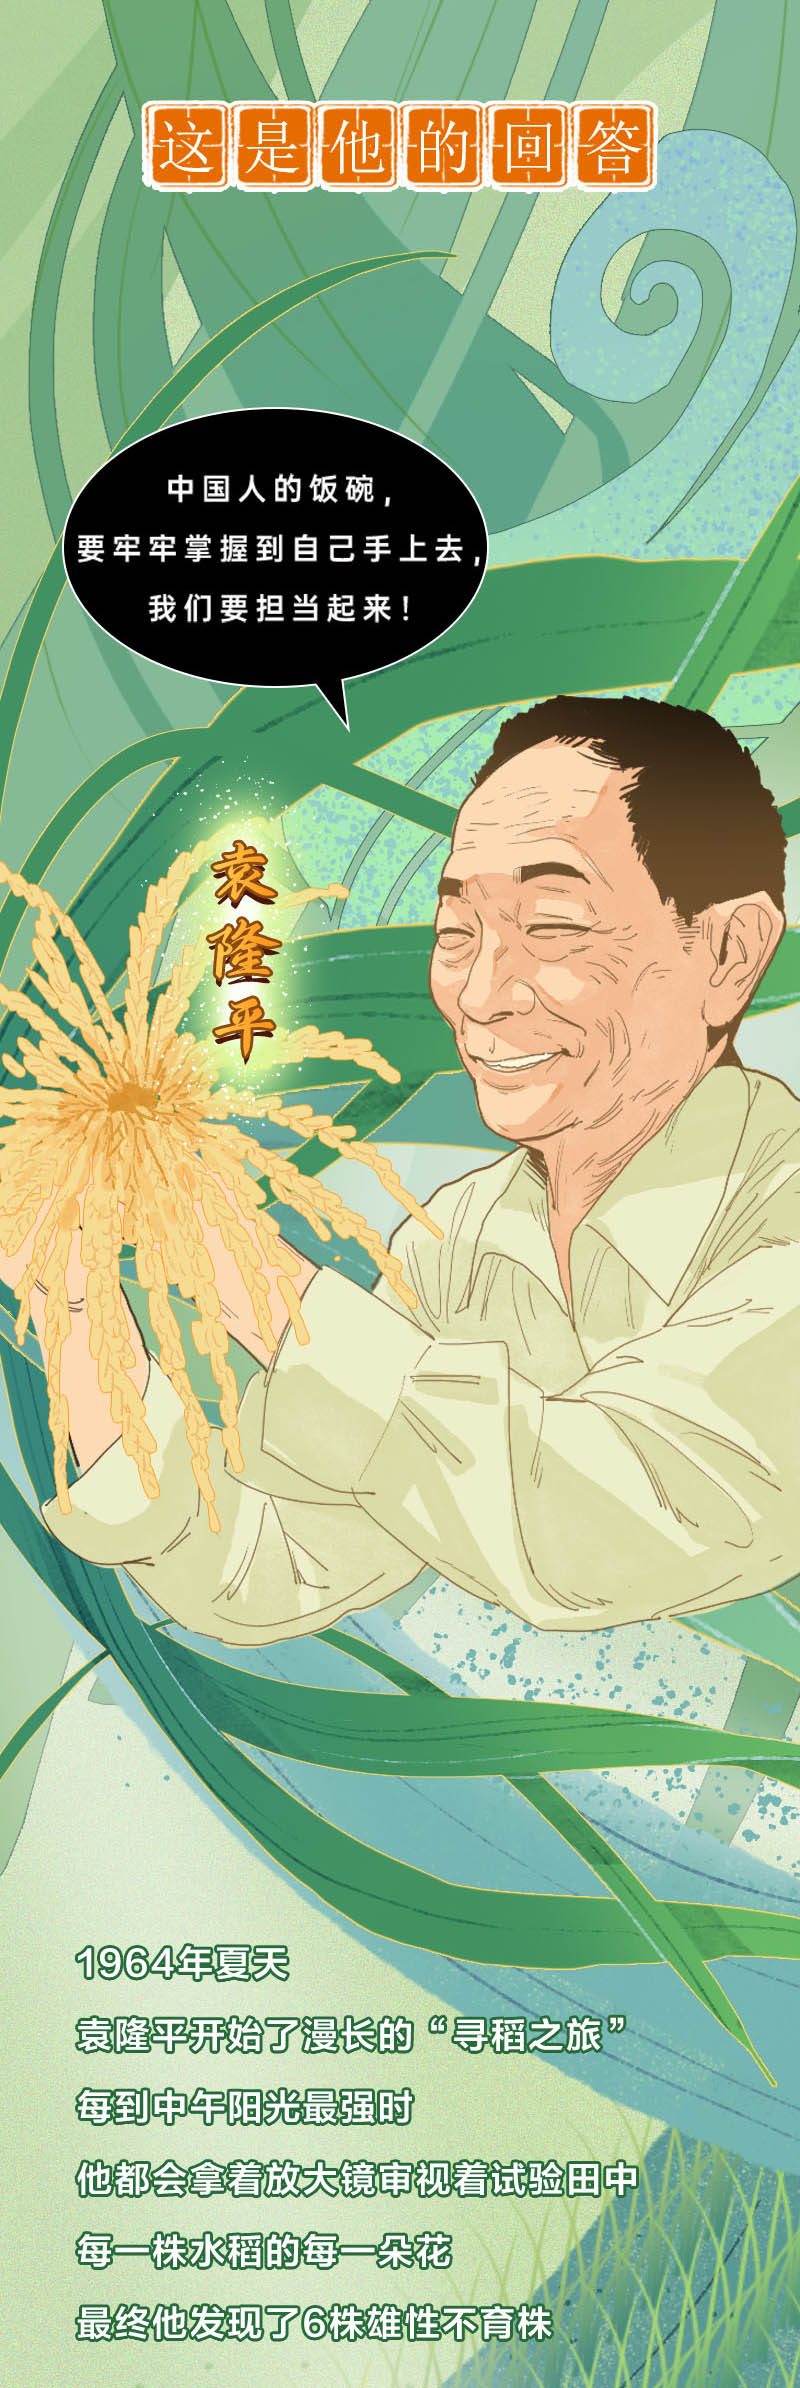 一粒种子改变世界：手绘长图纪念中国攻克杂交水稻难关 50 周年